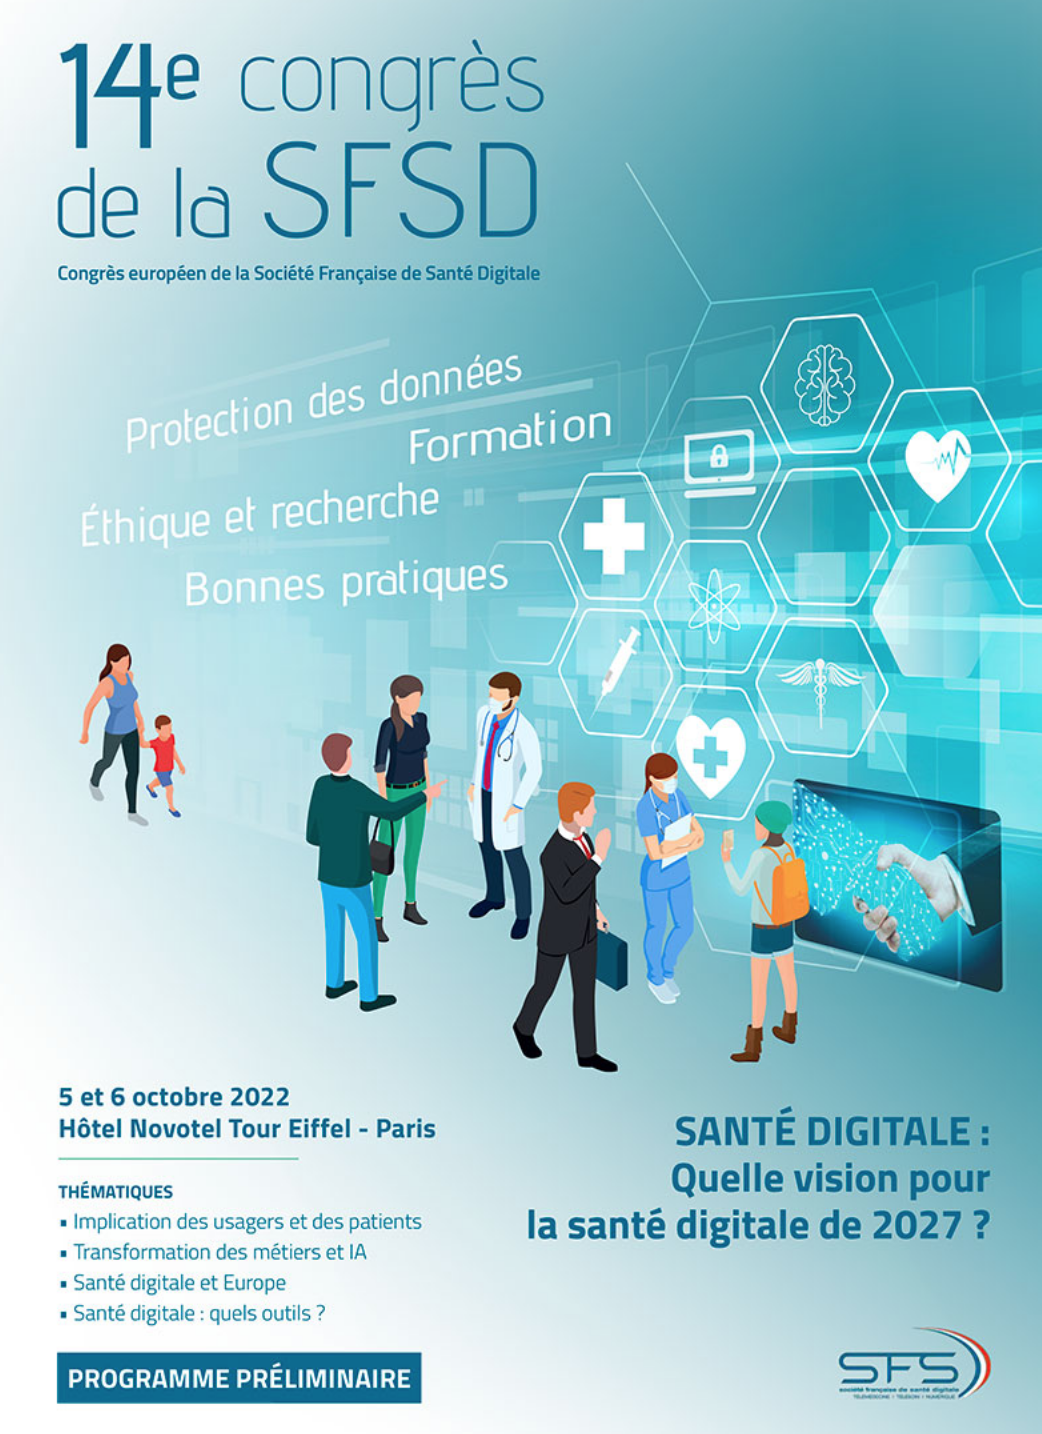 14e Congrès de la Société Française de Santé Digitale (SFSD)